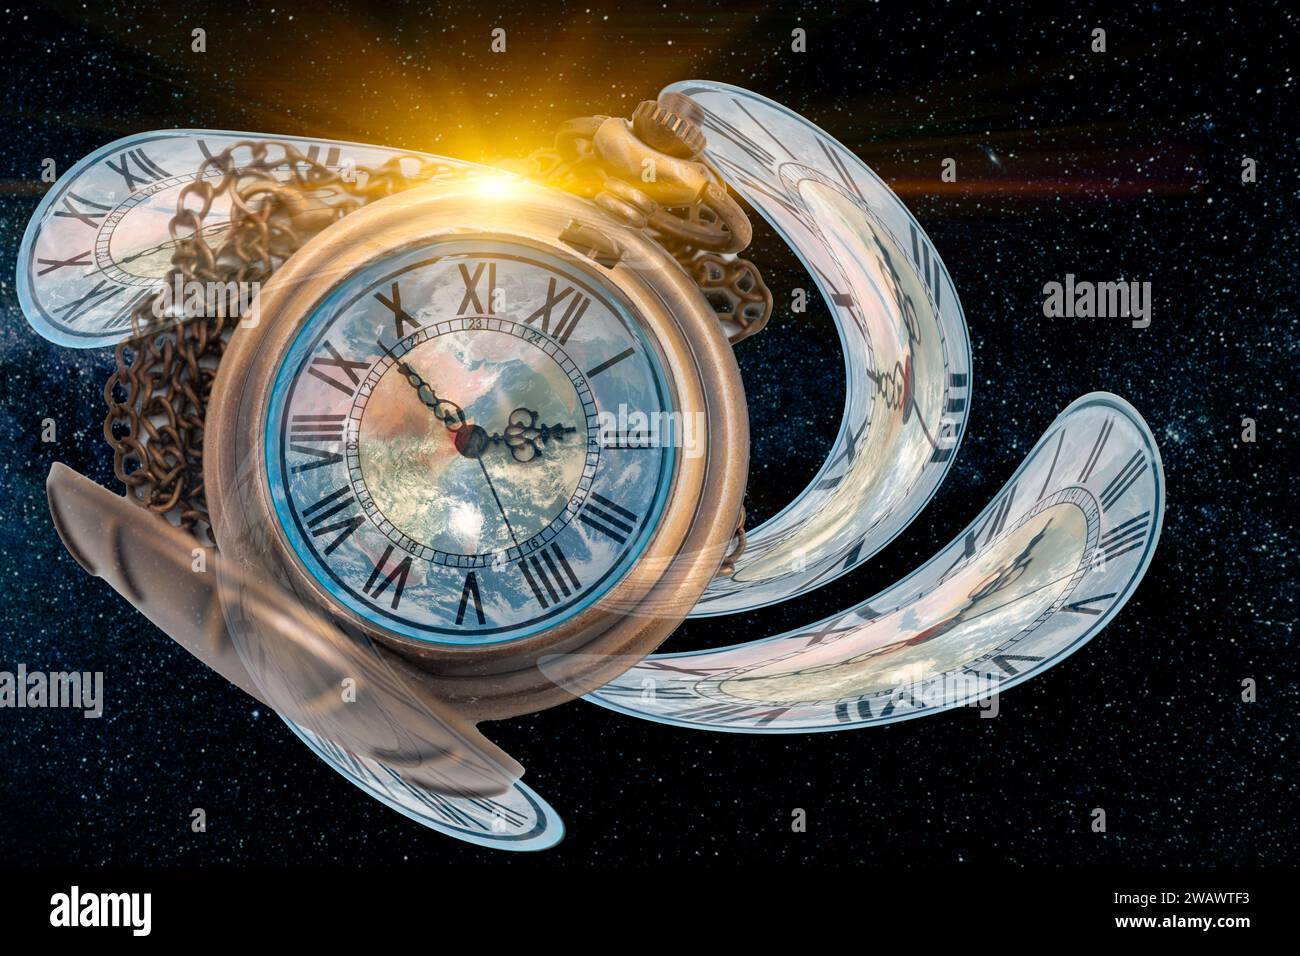 Concetto Scifi dell'universo dello spazio-tempo, distorsione temporale dell'orologio a torsione alterata nello spazio curvato per Space and Times of Theory, elemento immagine della NASA Foto Stock